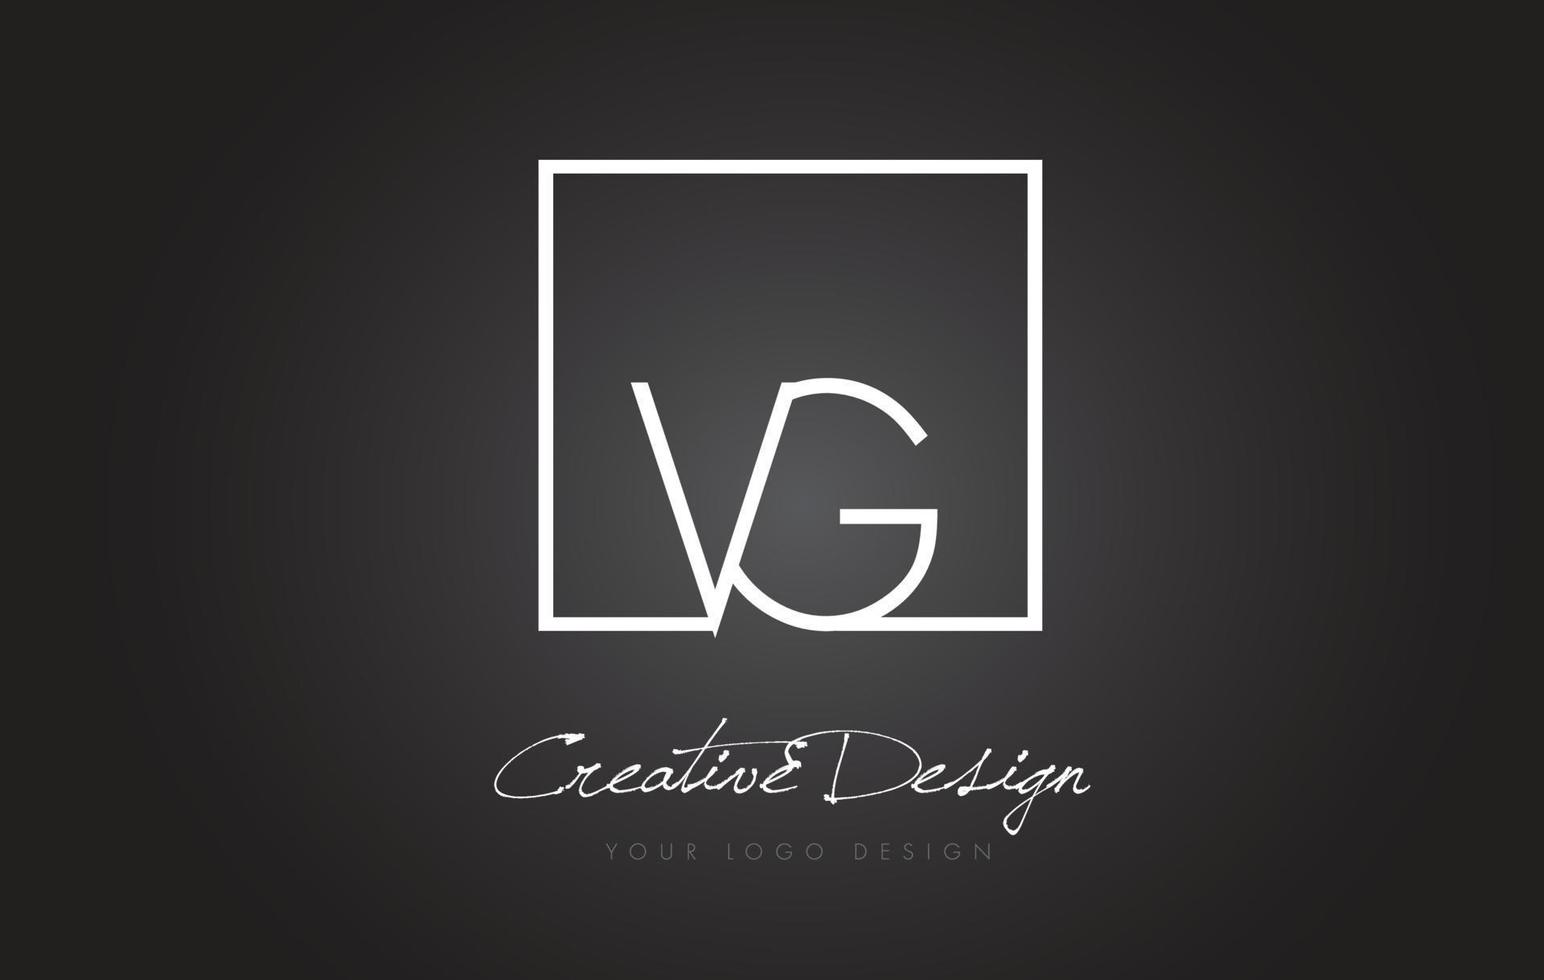 création de logo de lettre de cadre carré vg avec des couleurs noir et blanc. vecteur